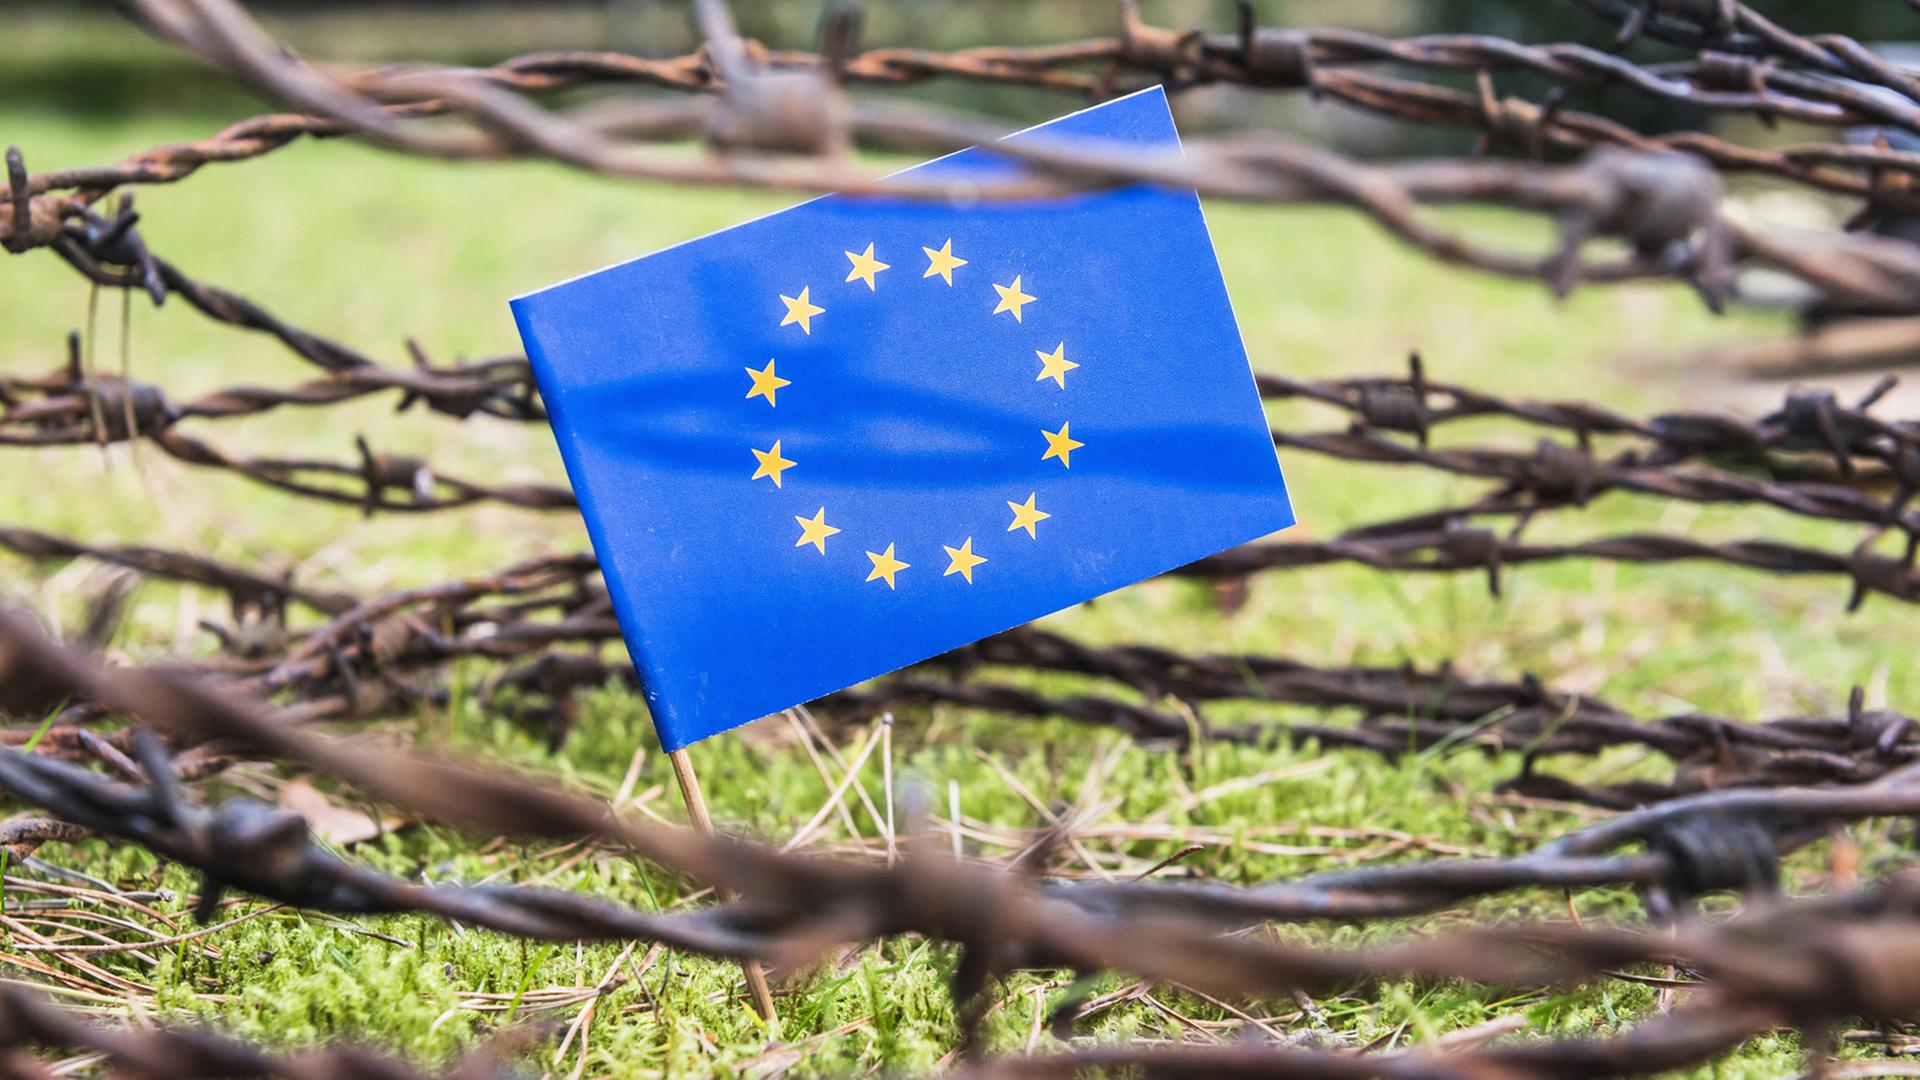 Flagge der EU hinter Stacheldrahtzaun